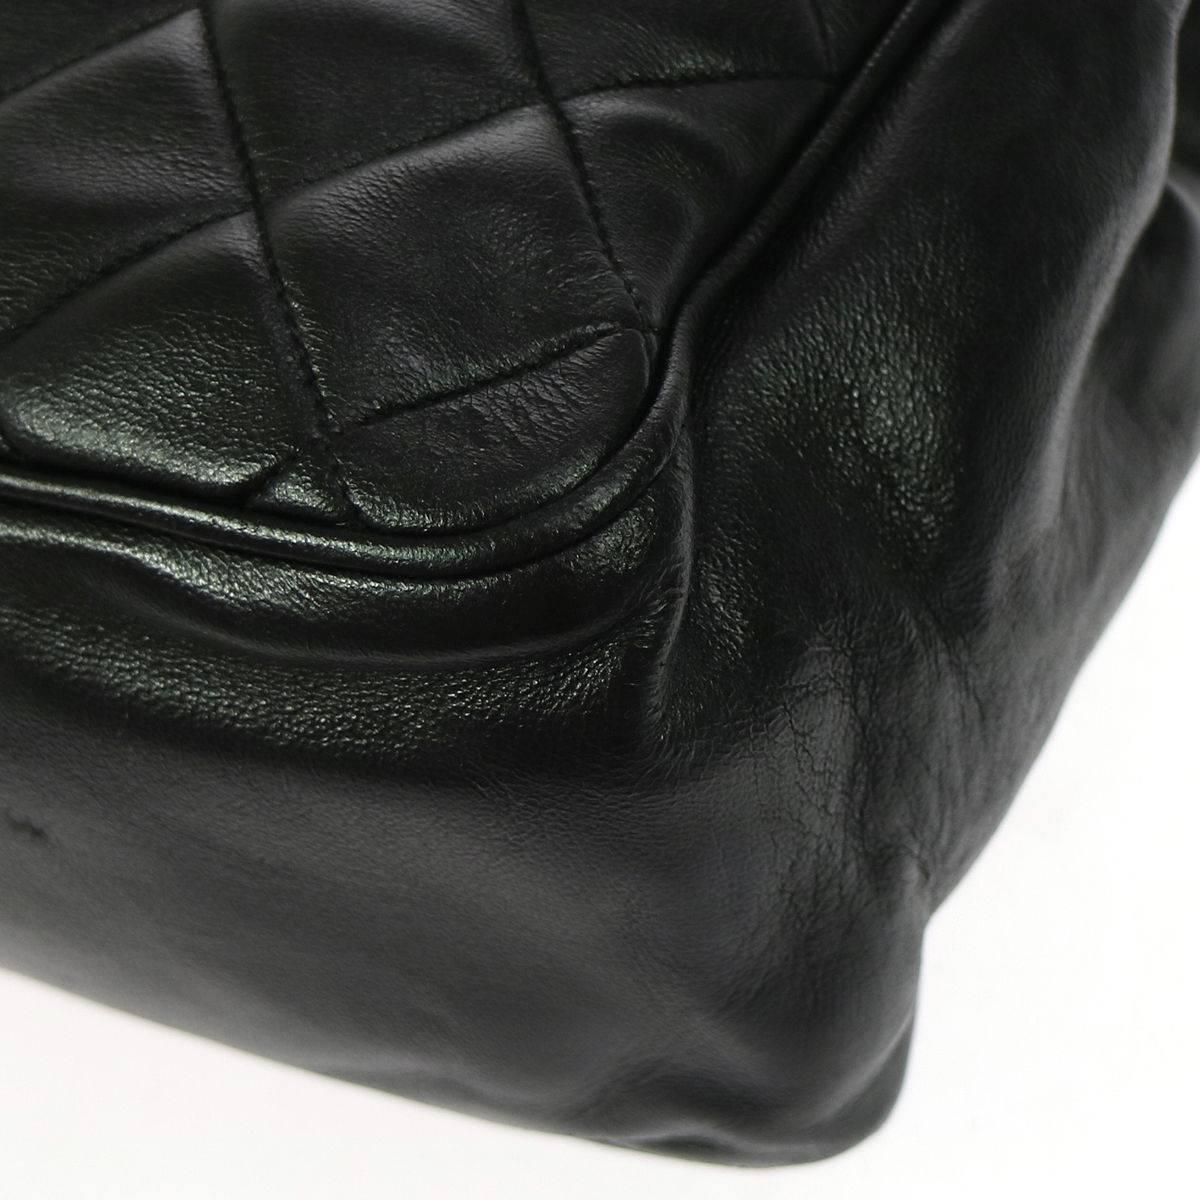 Chanel Vintage Black Lambskin Carryall Large Travel Shopper Tote Shoulder Bag 2